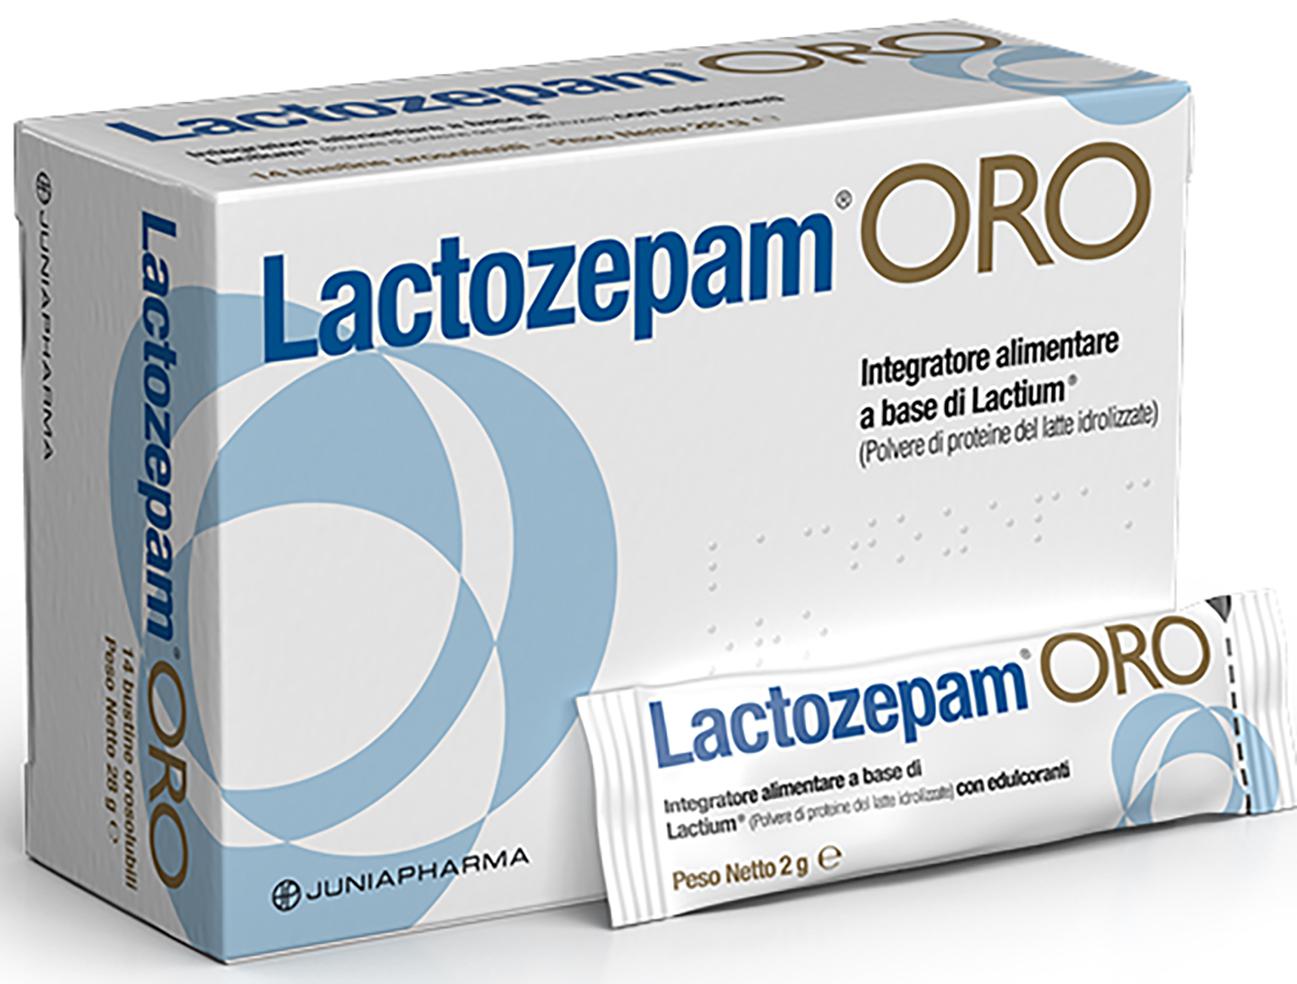 Lactozepam® Oro